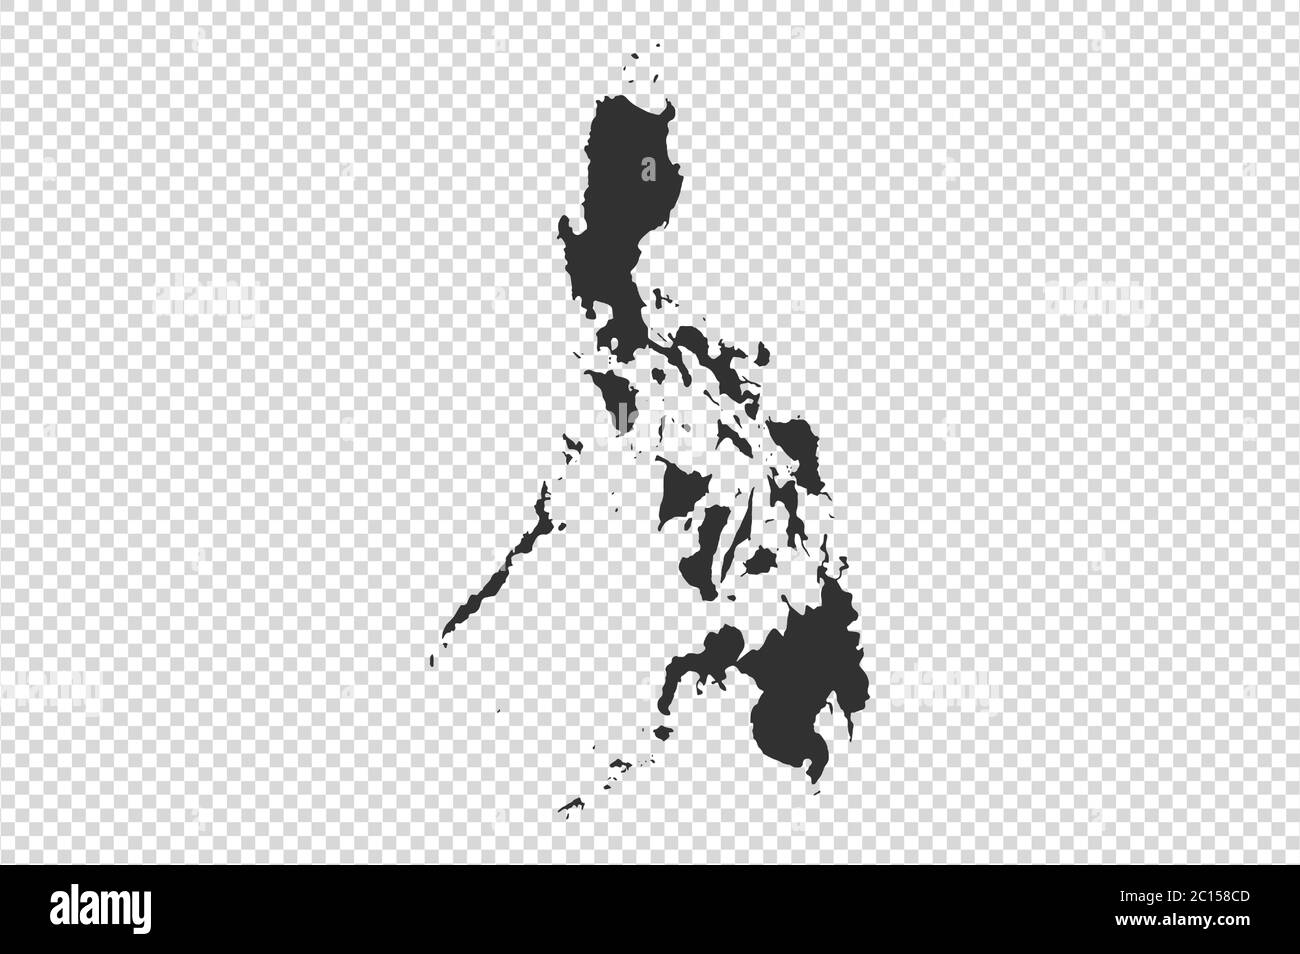 Bản đồ Philippines với gam màu xám trên nền PNG hoặc transparent... cung cấp cho bạn một cái nhìn trực quan và đa dạng về đất nước Philippines. Với sự kết hợp đầy sáng tạo giữa màu sắc và phong cách, bức tranh này sẽ cho bạn thông tin chi tiết nhất về địa lý và văn hóa của Philippines. Hãy xem và khám phá!